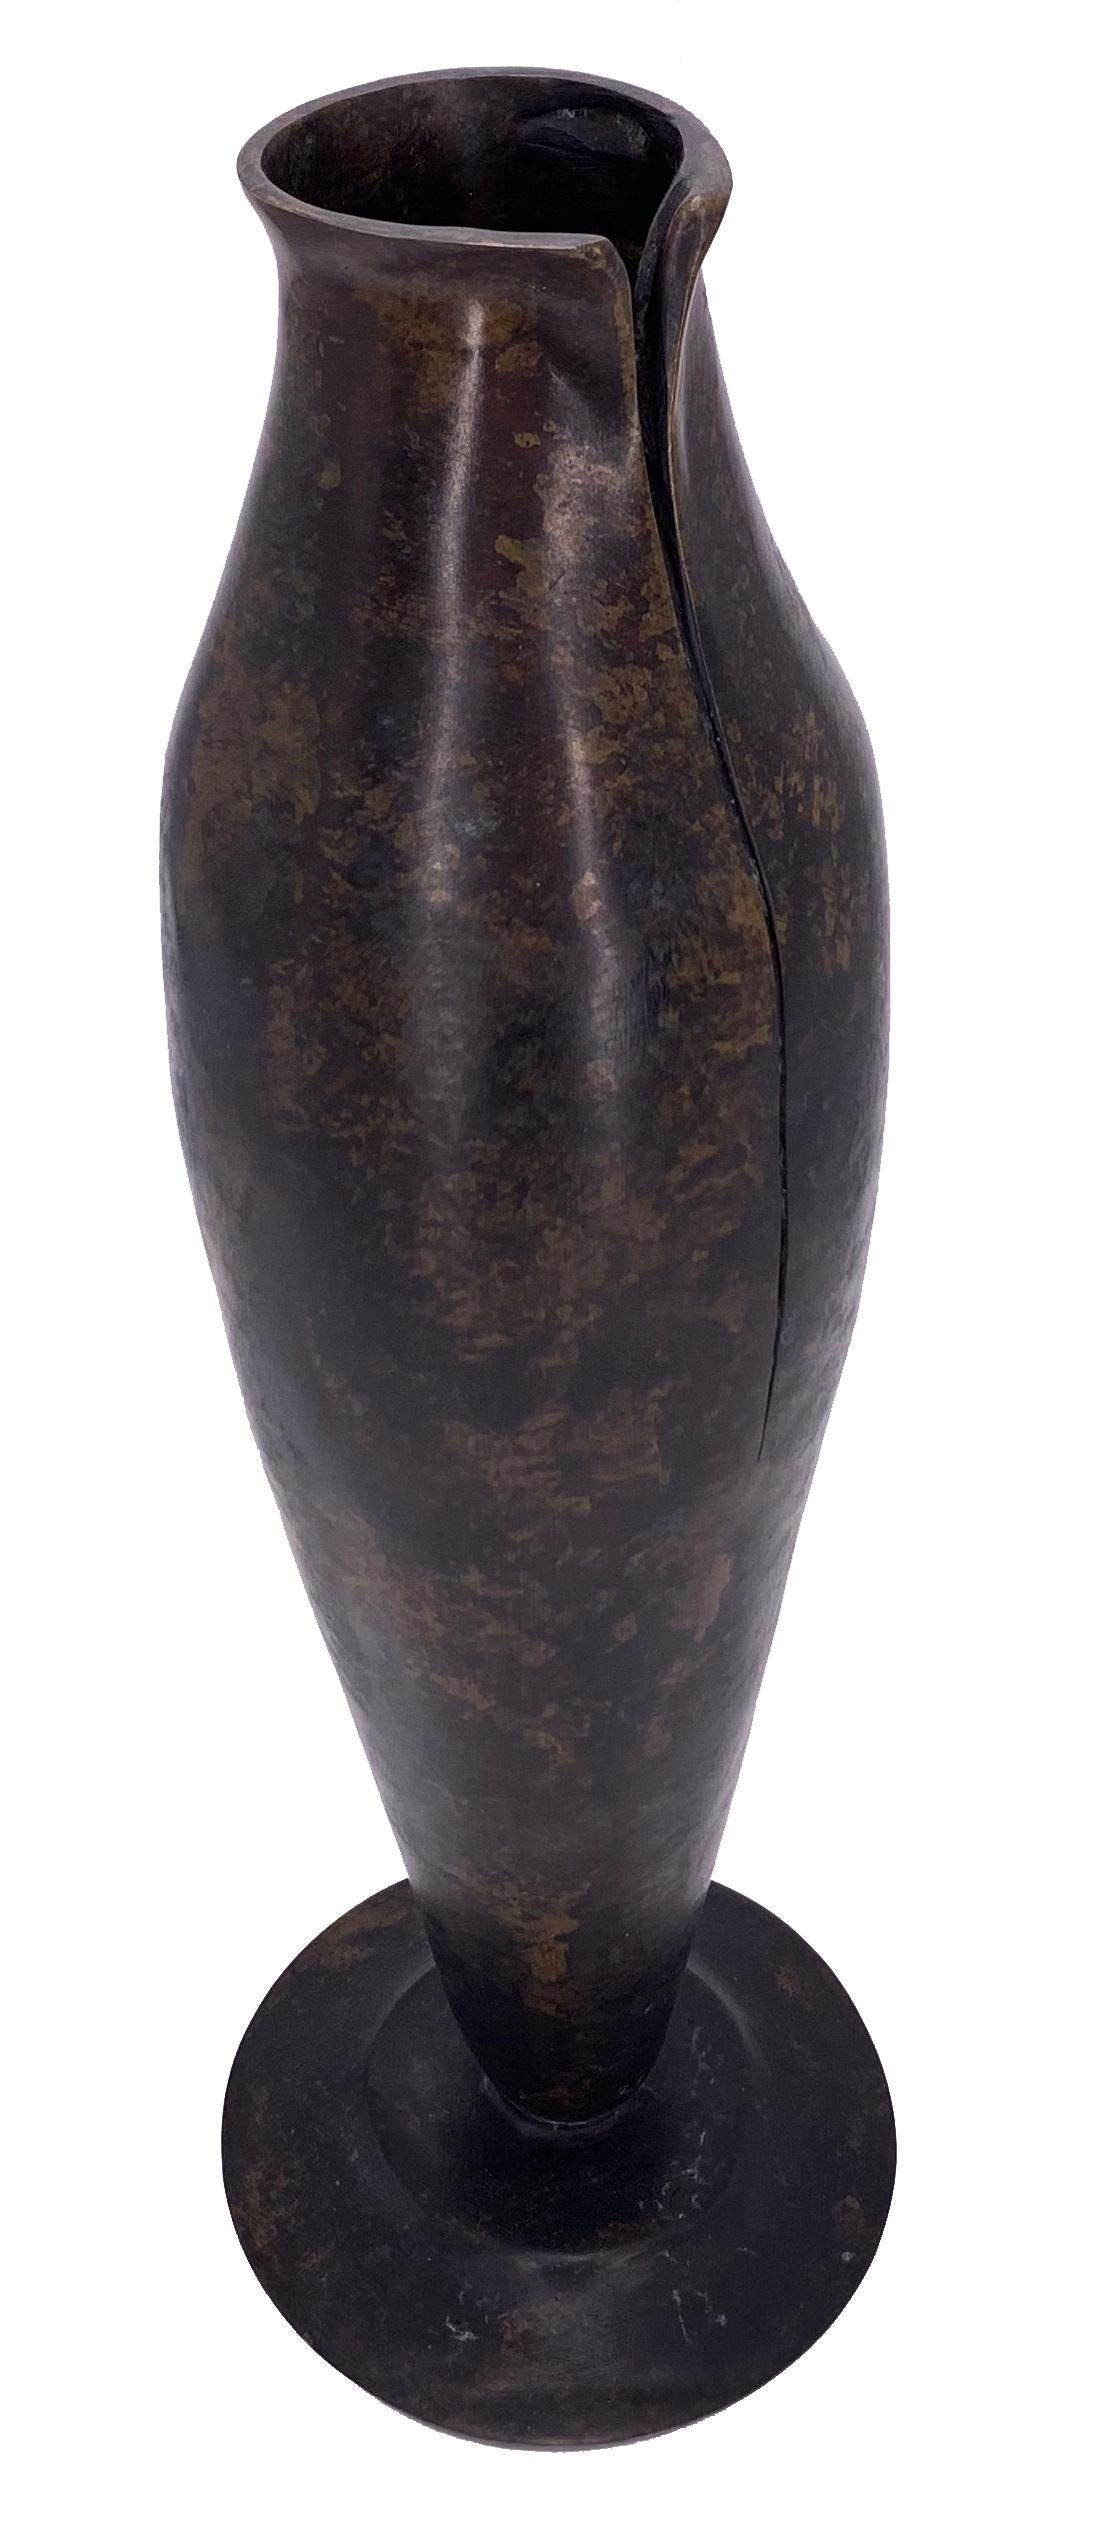 De plus grandes quantités sont disponibles sur demande, avec un délai de production de 8 semaines.

Description : Vase en bronze, la gourde
Couleur : Bronze
Taille : 14Ø x 42H cm
Matériau : Bronze
Collection : Rythme du milieu du siècle